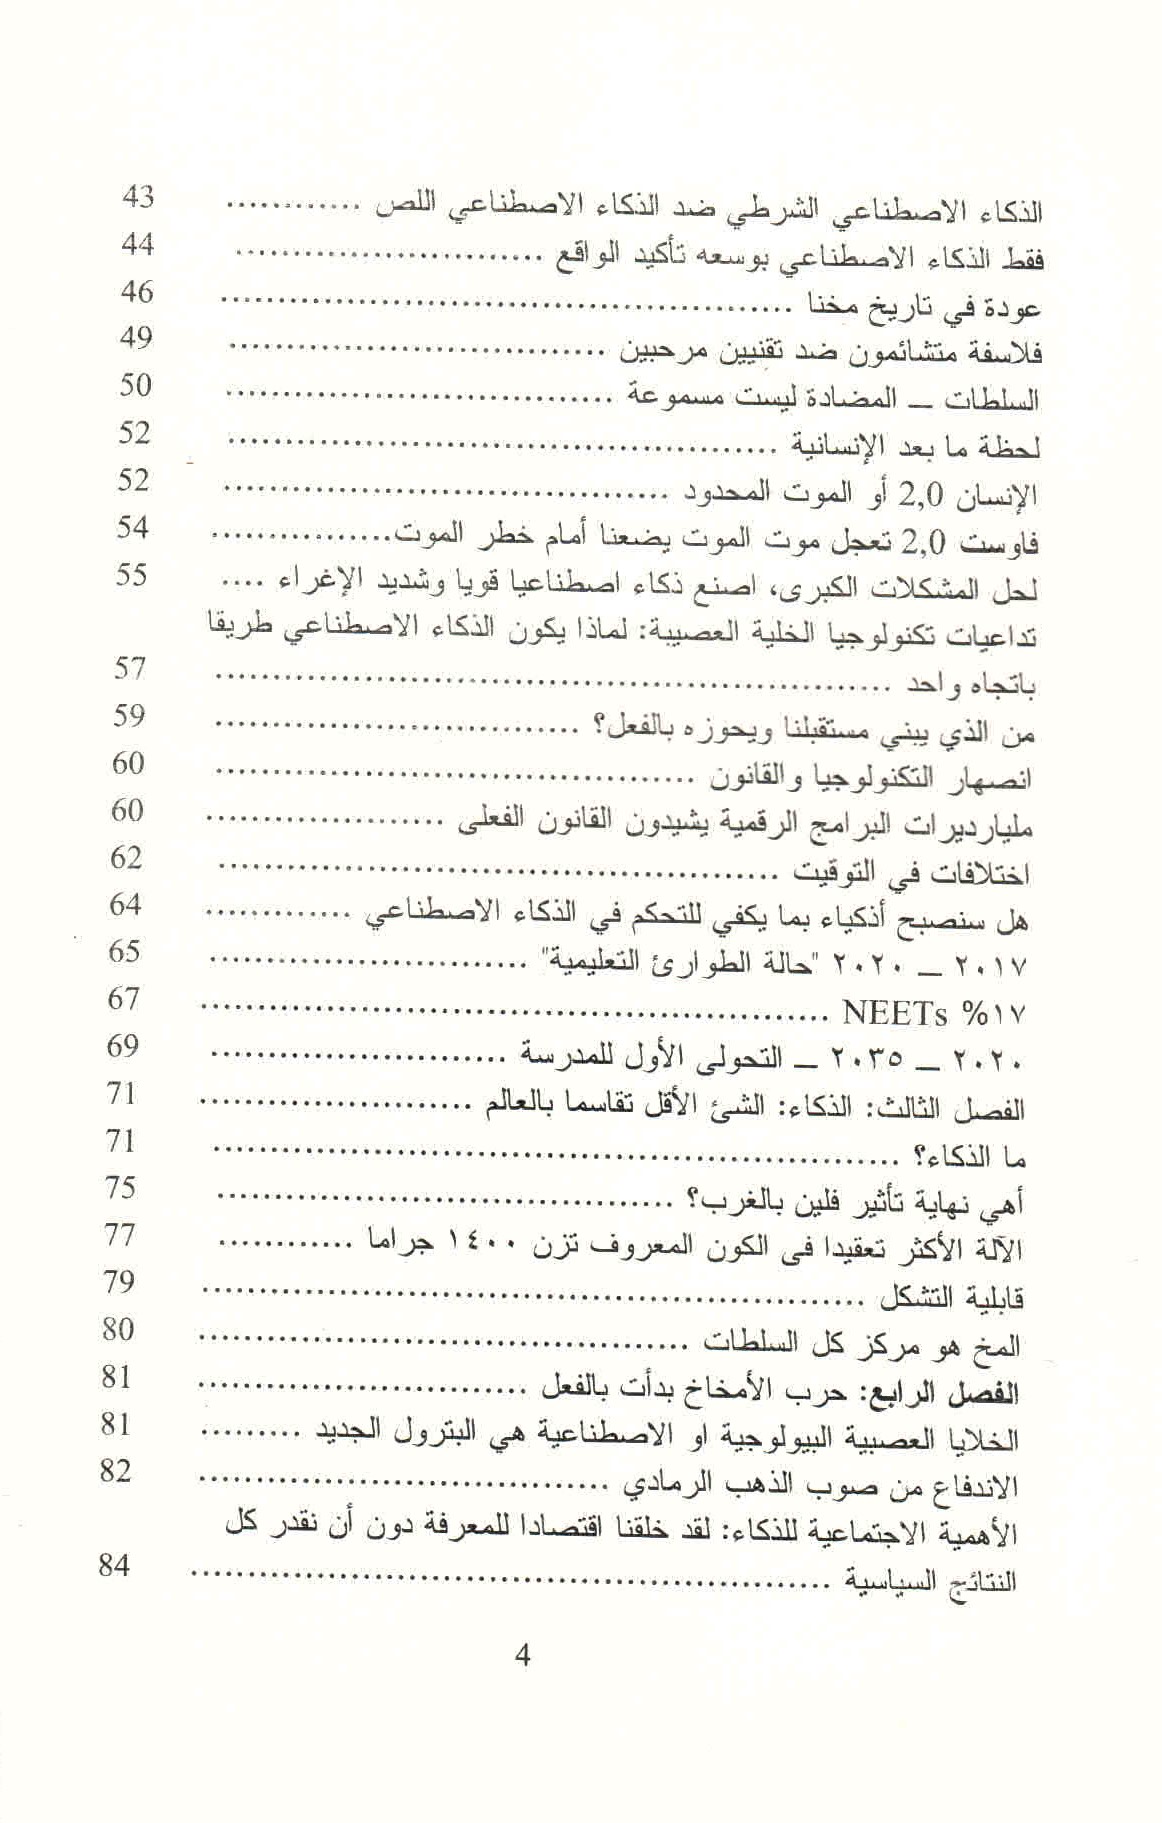 ص. 4 قائمة محتويات كتاب حرب الذكاء.